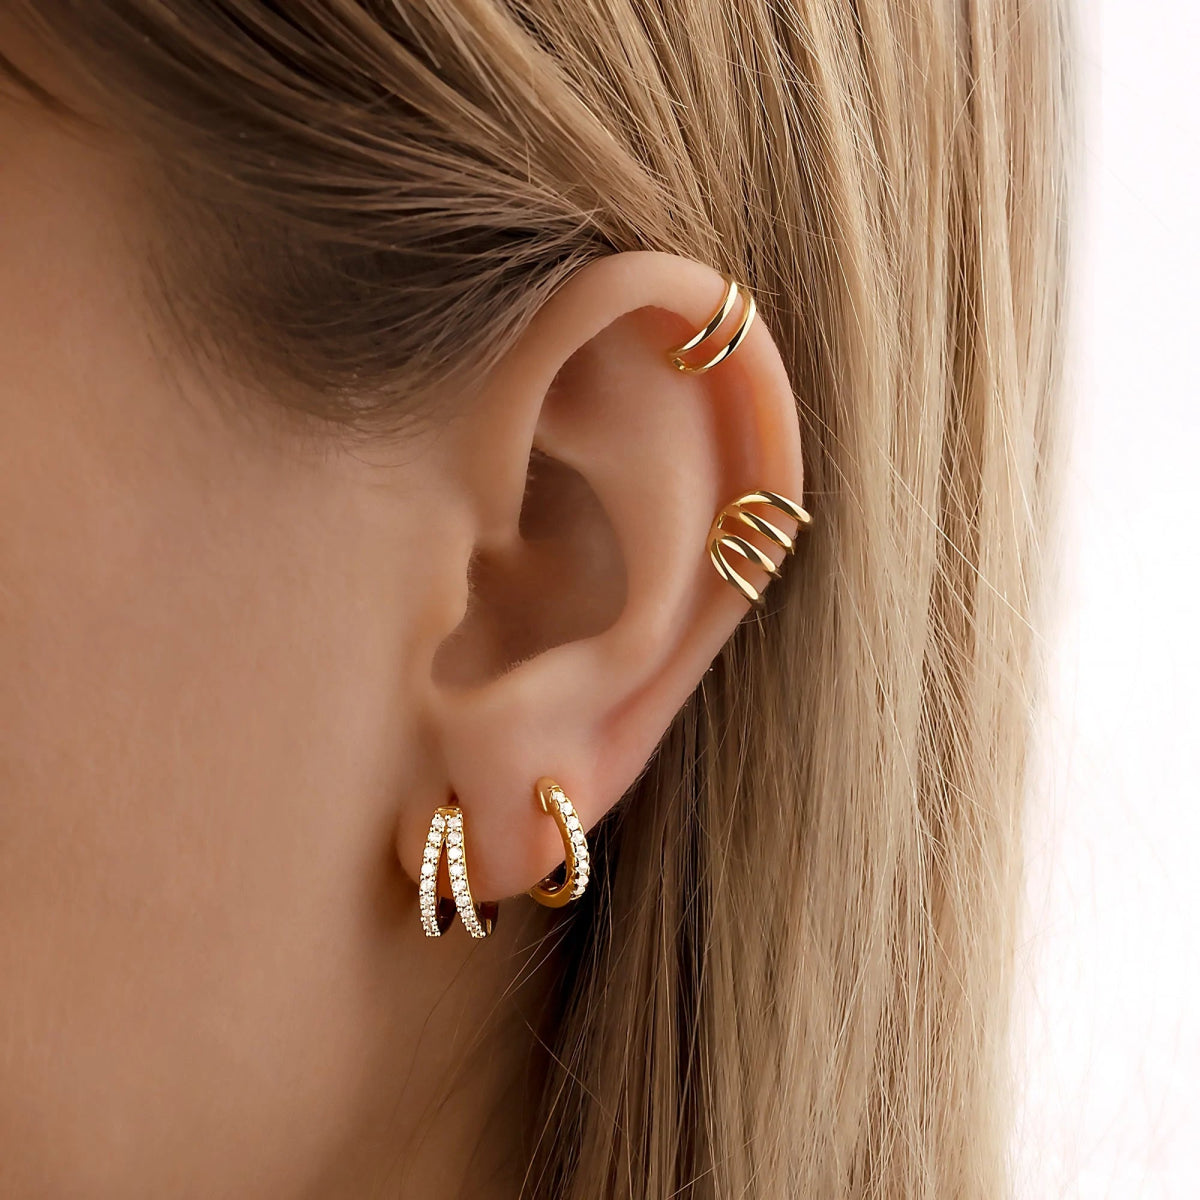 "Luminous Hoop Rings" Earrings - Milas Jewels Shop